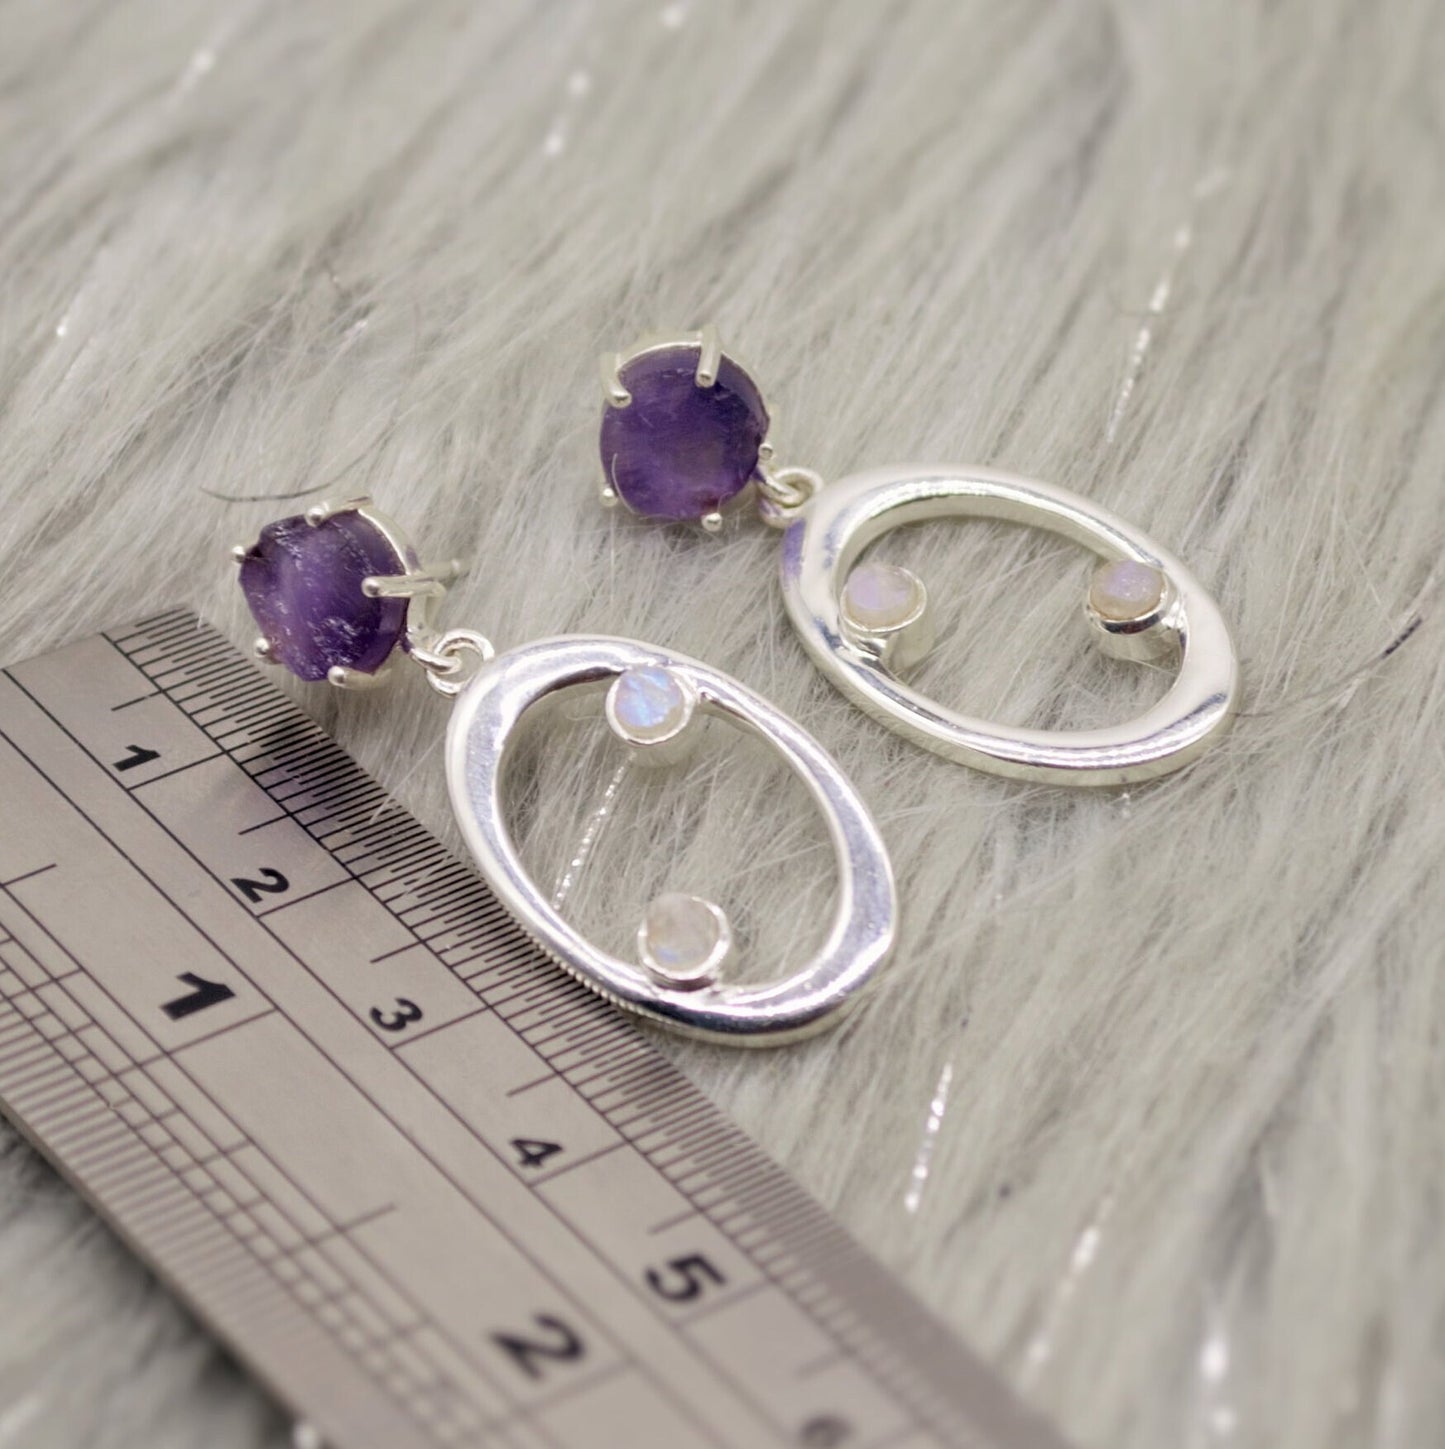 Amethyst, Moonstone Silver Earrings, Amethyst Jewelry, February Birthstone, Minimalist Purple Earrings, Unique Sterling Silver Drop Earrings